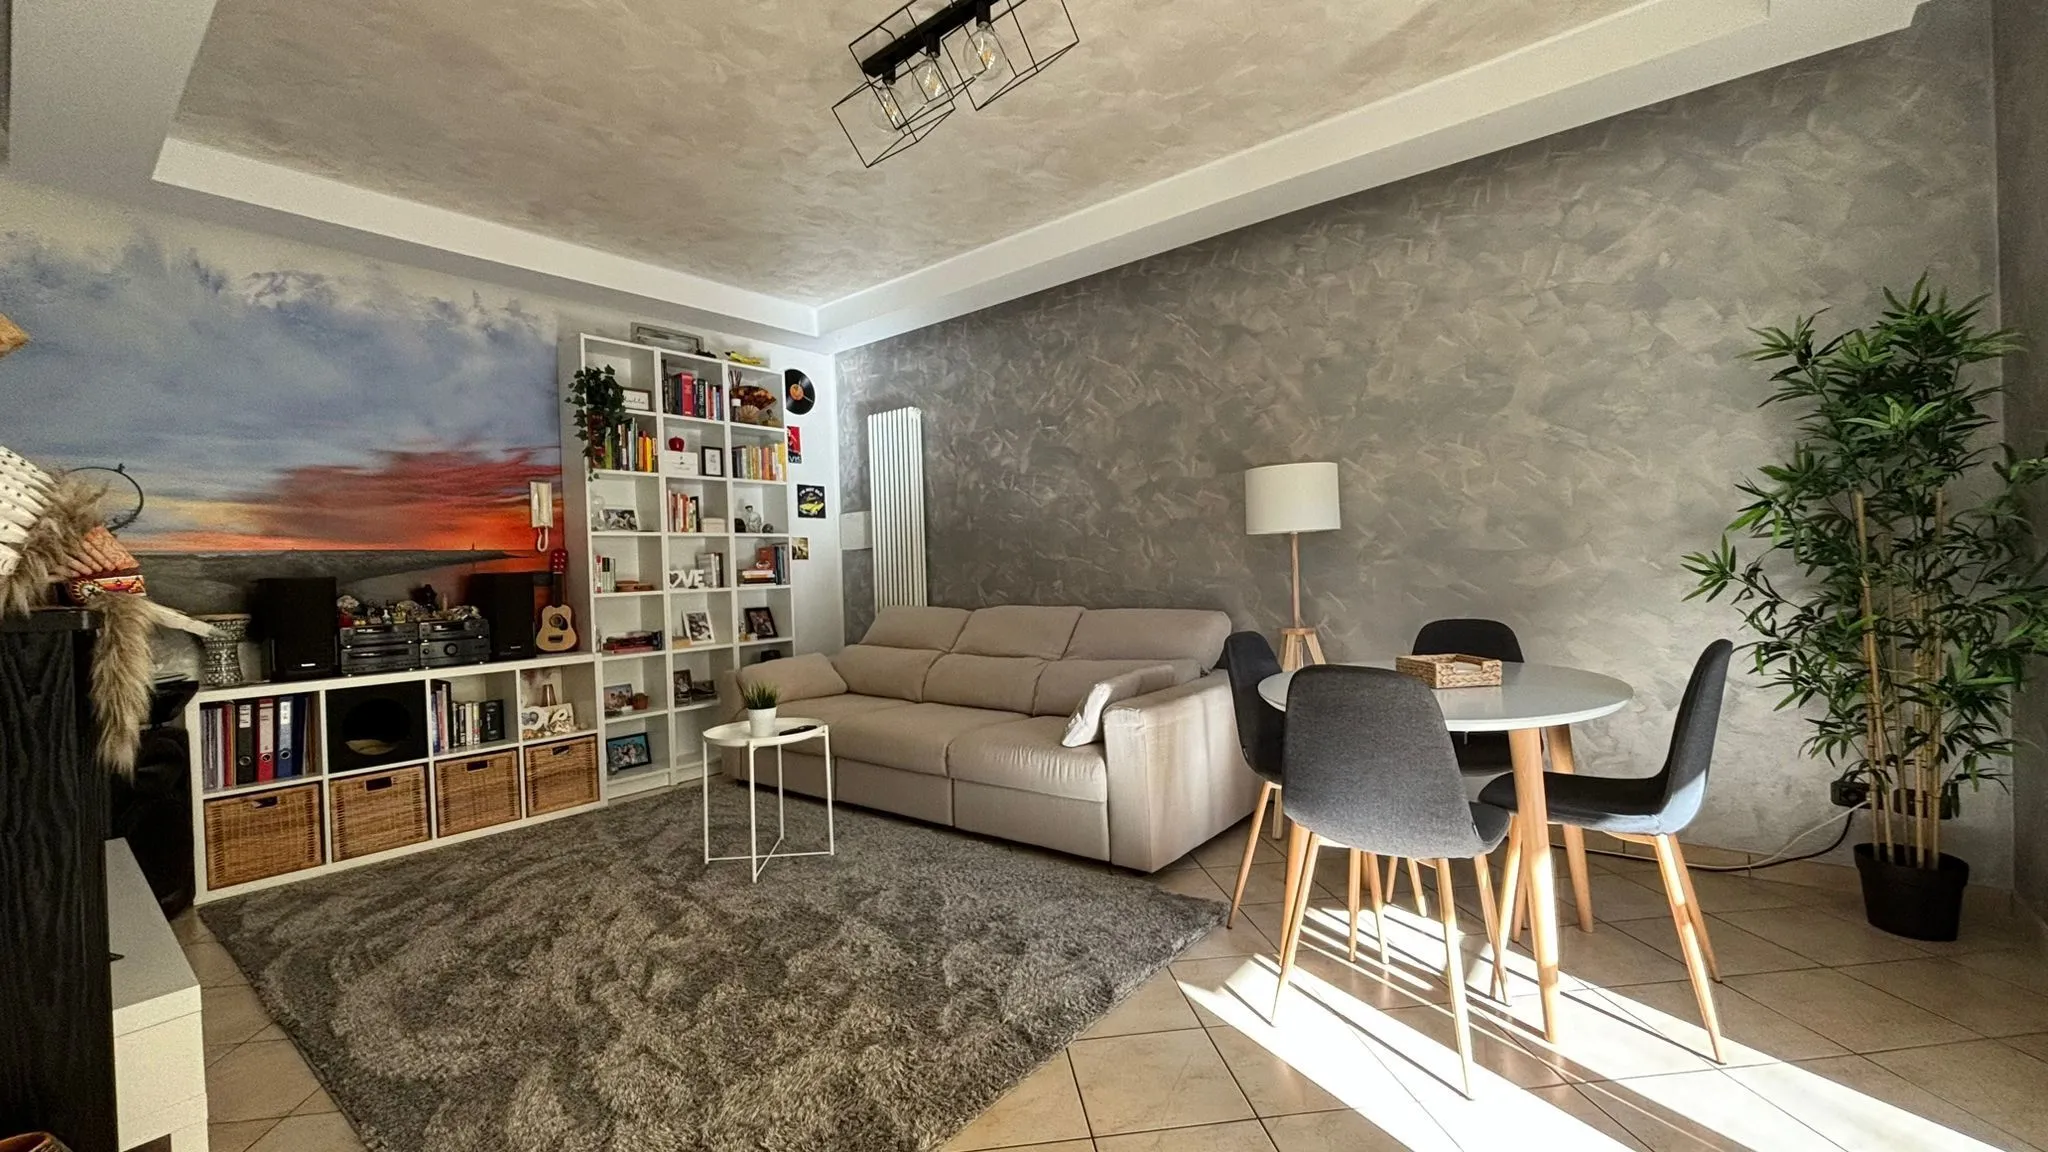 Immagine per Appartamento in vendita a Acquaviva Picena via Giuseppe Garibaldi